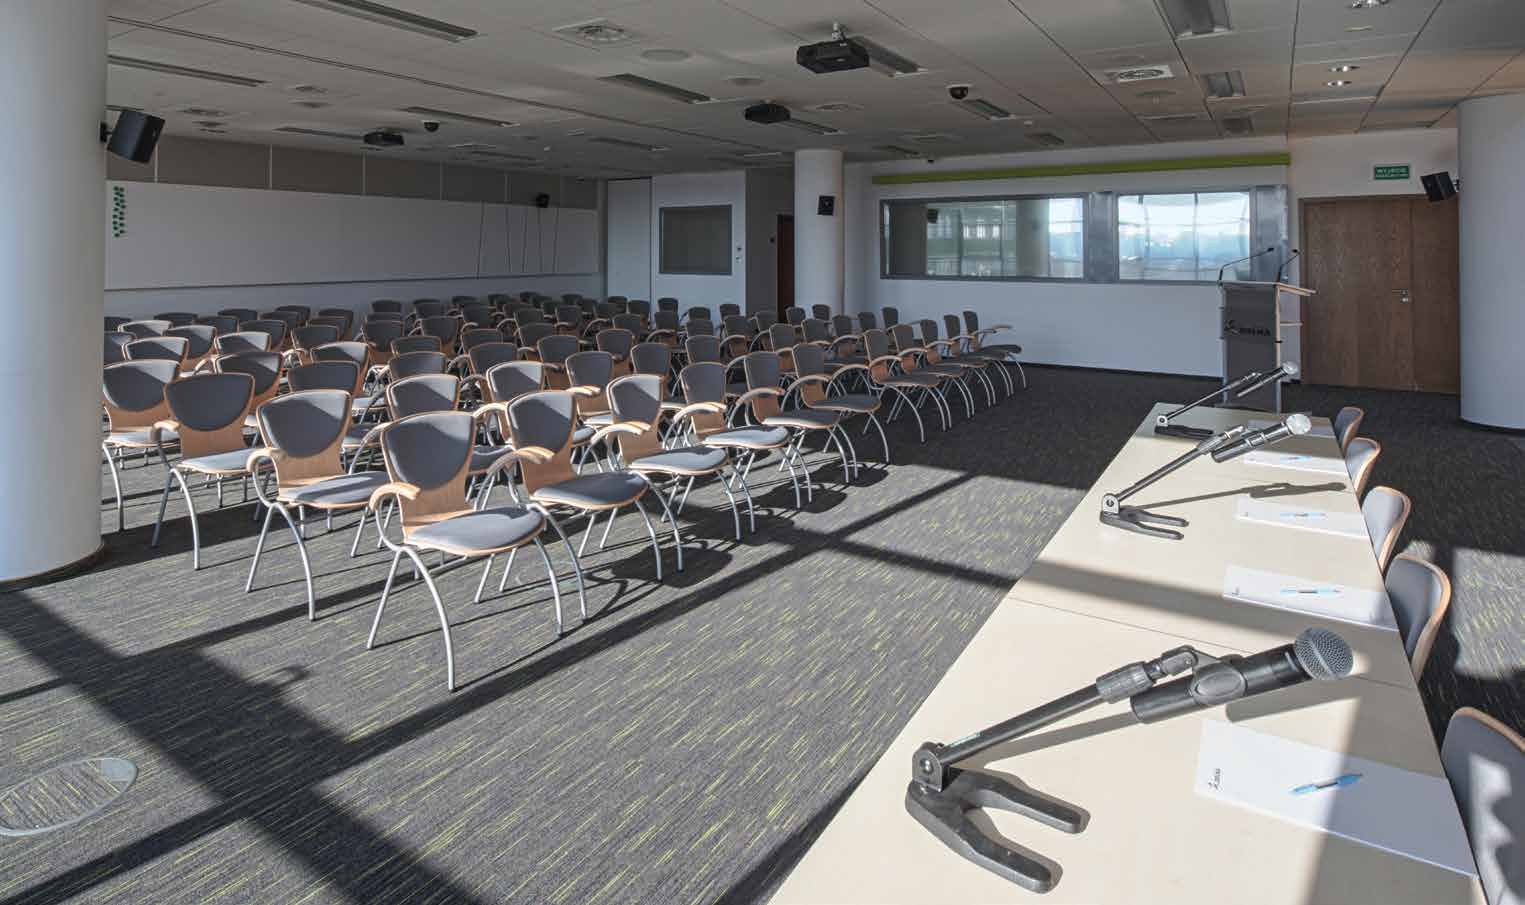 Centrum Konferencyjne Zielna C entrum Konferencyjne Zielna to pięć sal konferencyjnych o powierzchni od 40 do 250 m 2 oraz pięć sal szkoleniowych o powierzchni od 16 do 50 m 2.